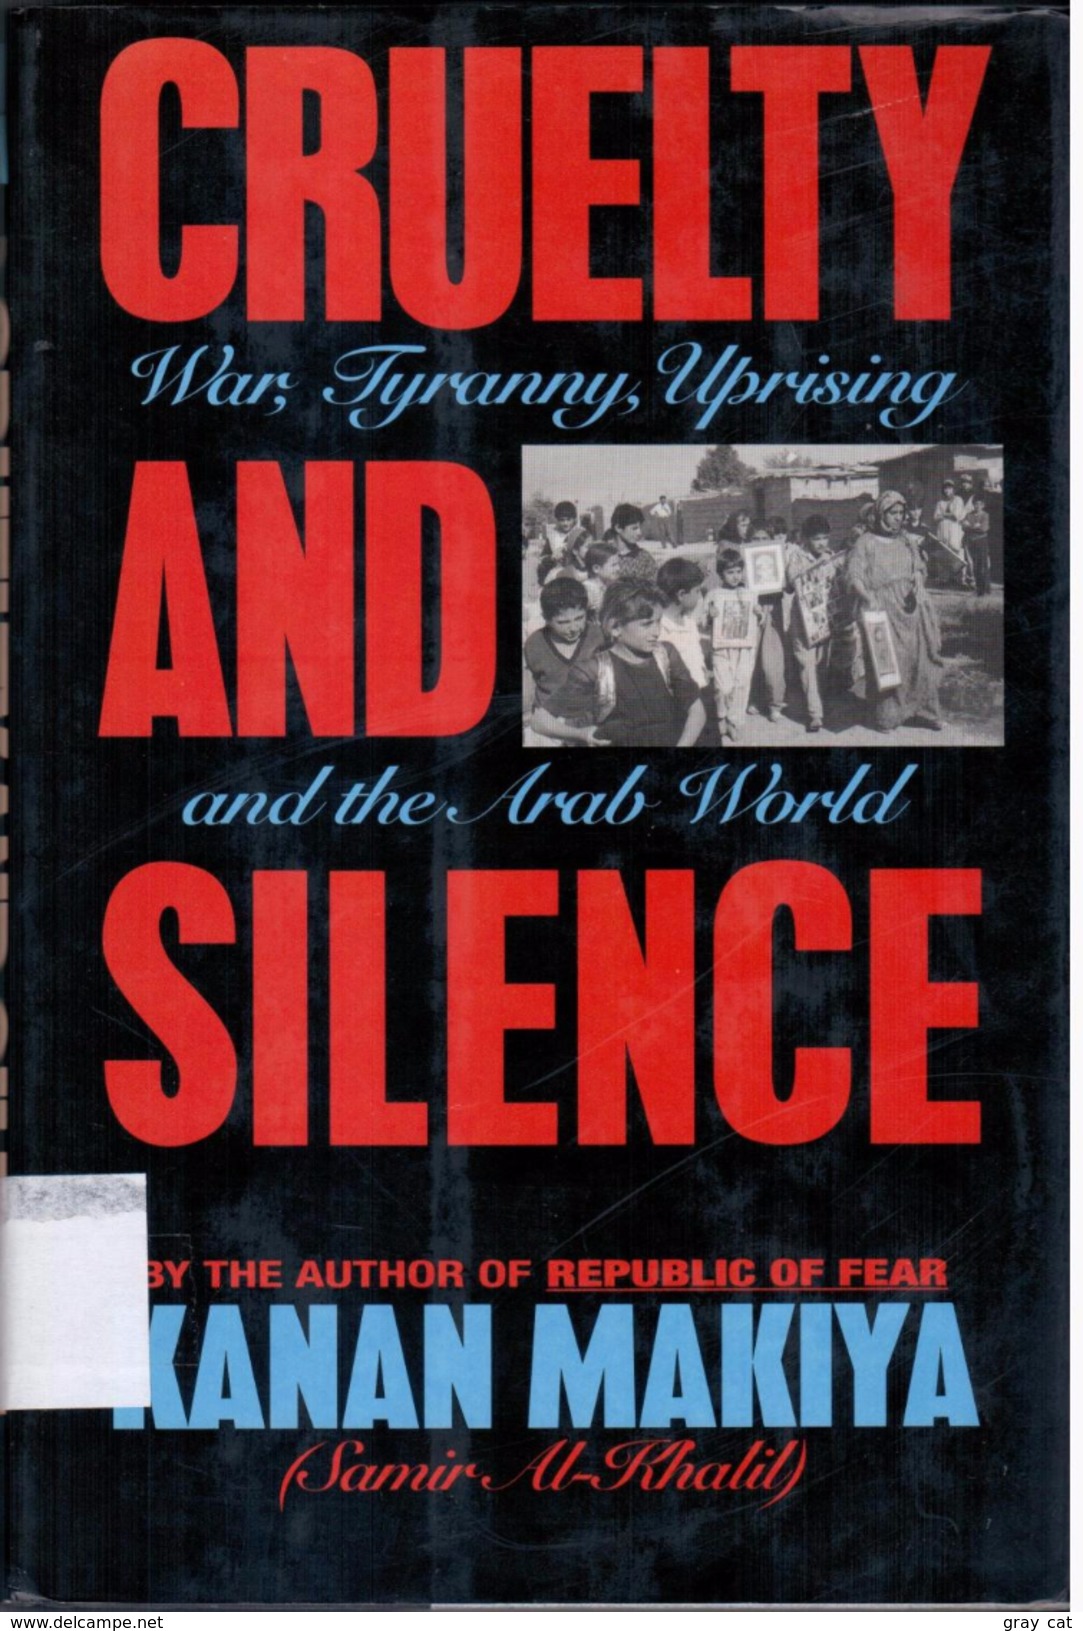 Cruelty And Silence: War, Tyranny, Uprising In The Arab World By Makiya, Kanan (ISBN 9780393031089) - Moyen Orient